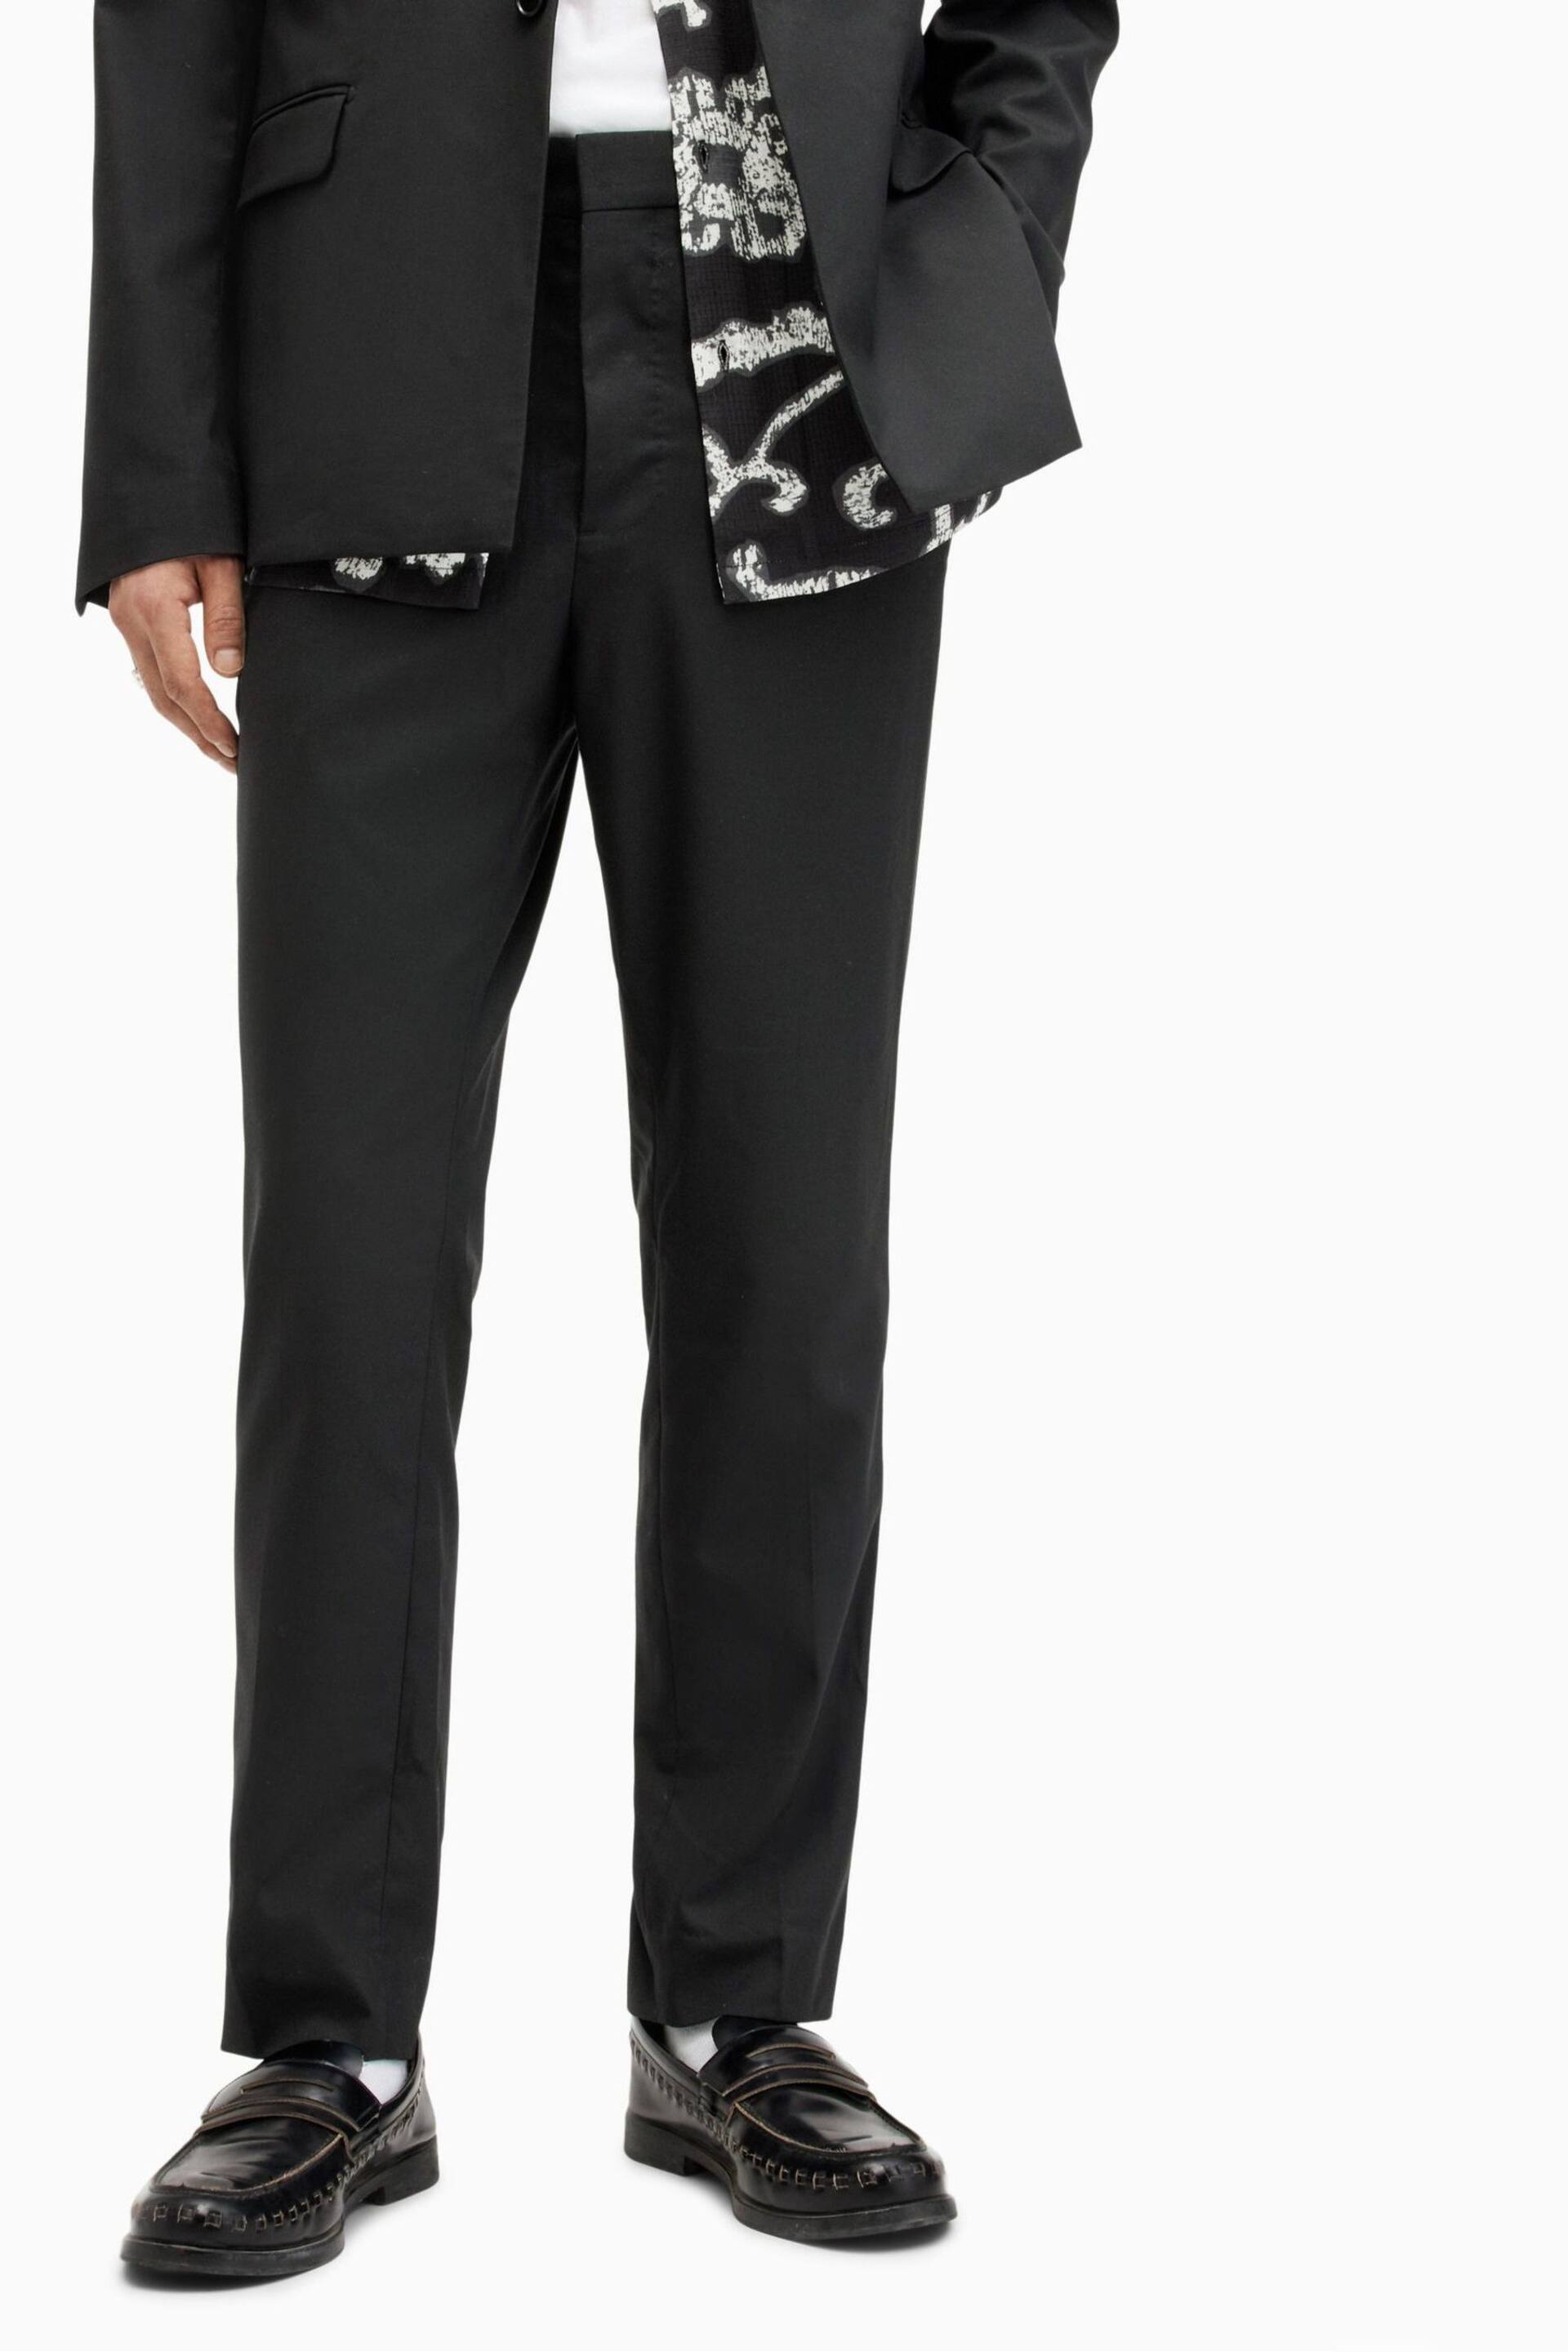 AllSaints Black Dima Trousers - Image 1 of 7